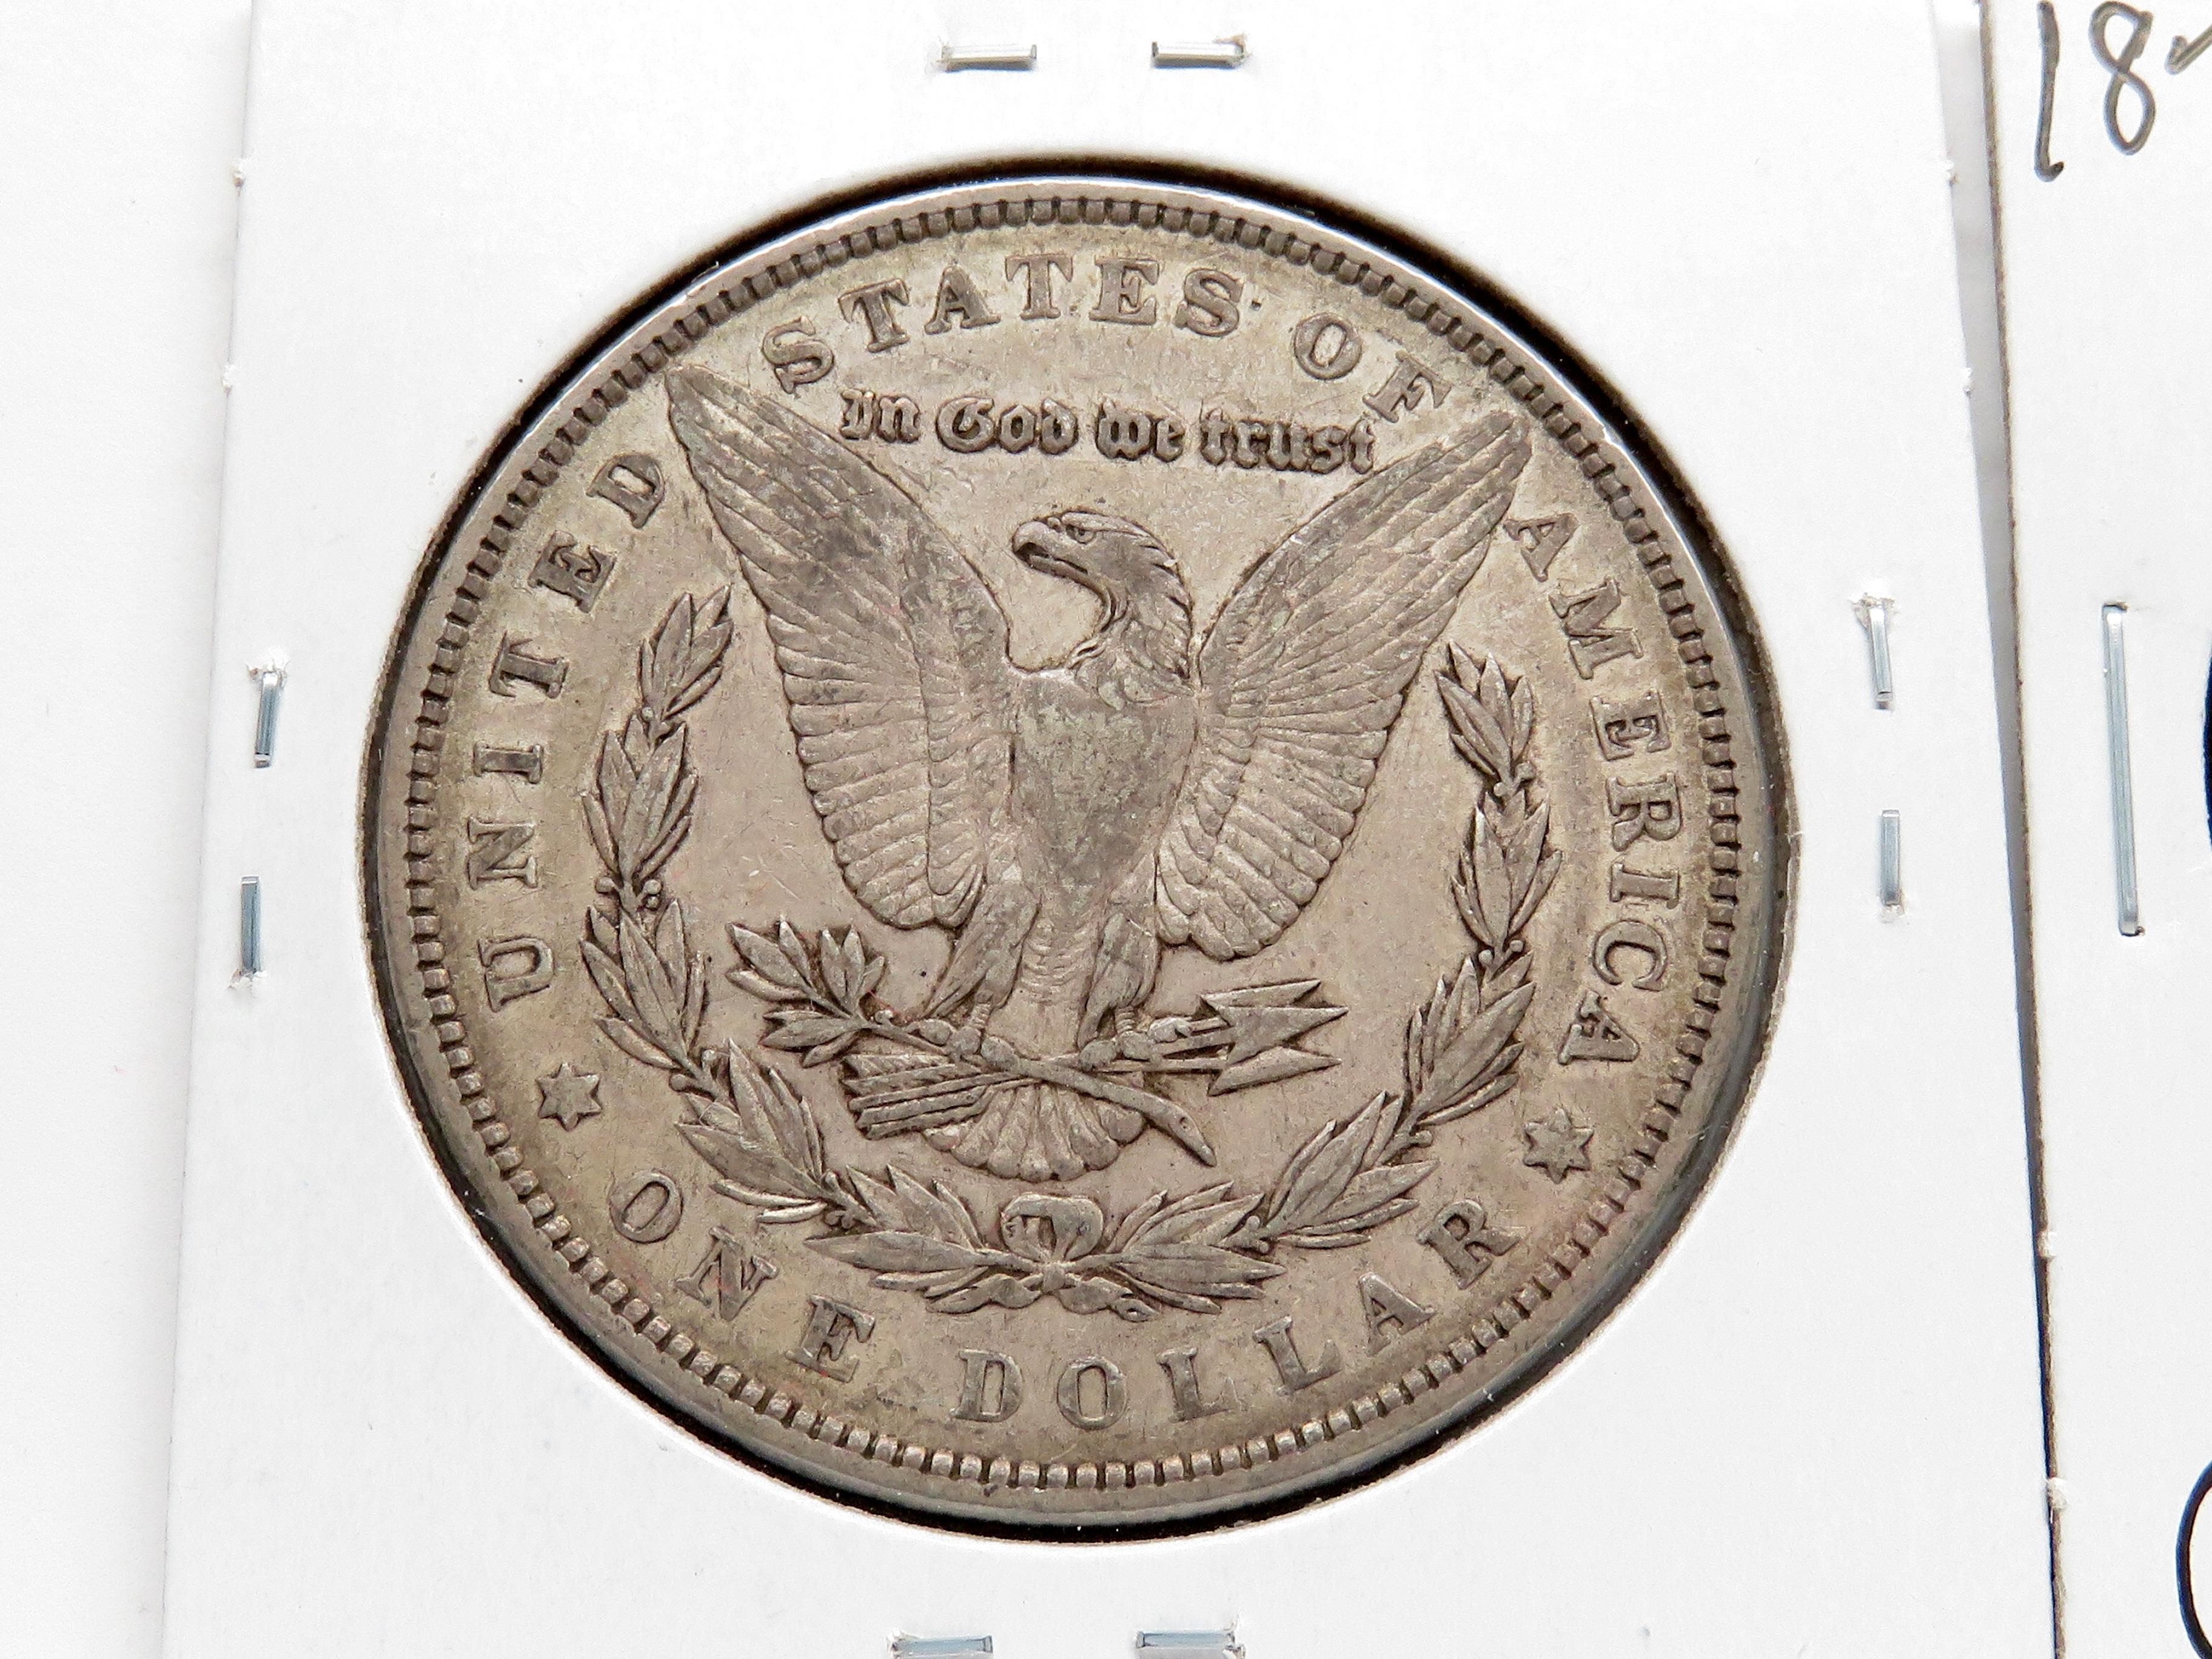 3 Morgan $: 1879 VF, 79-O G, 79S 3rd rev EF toning